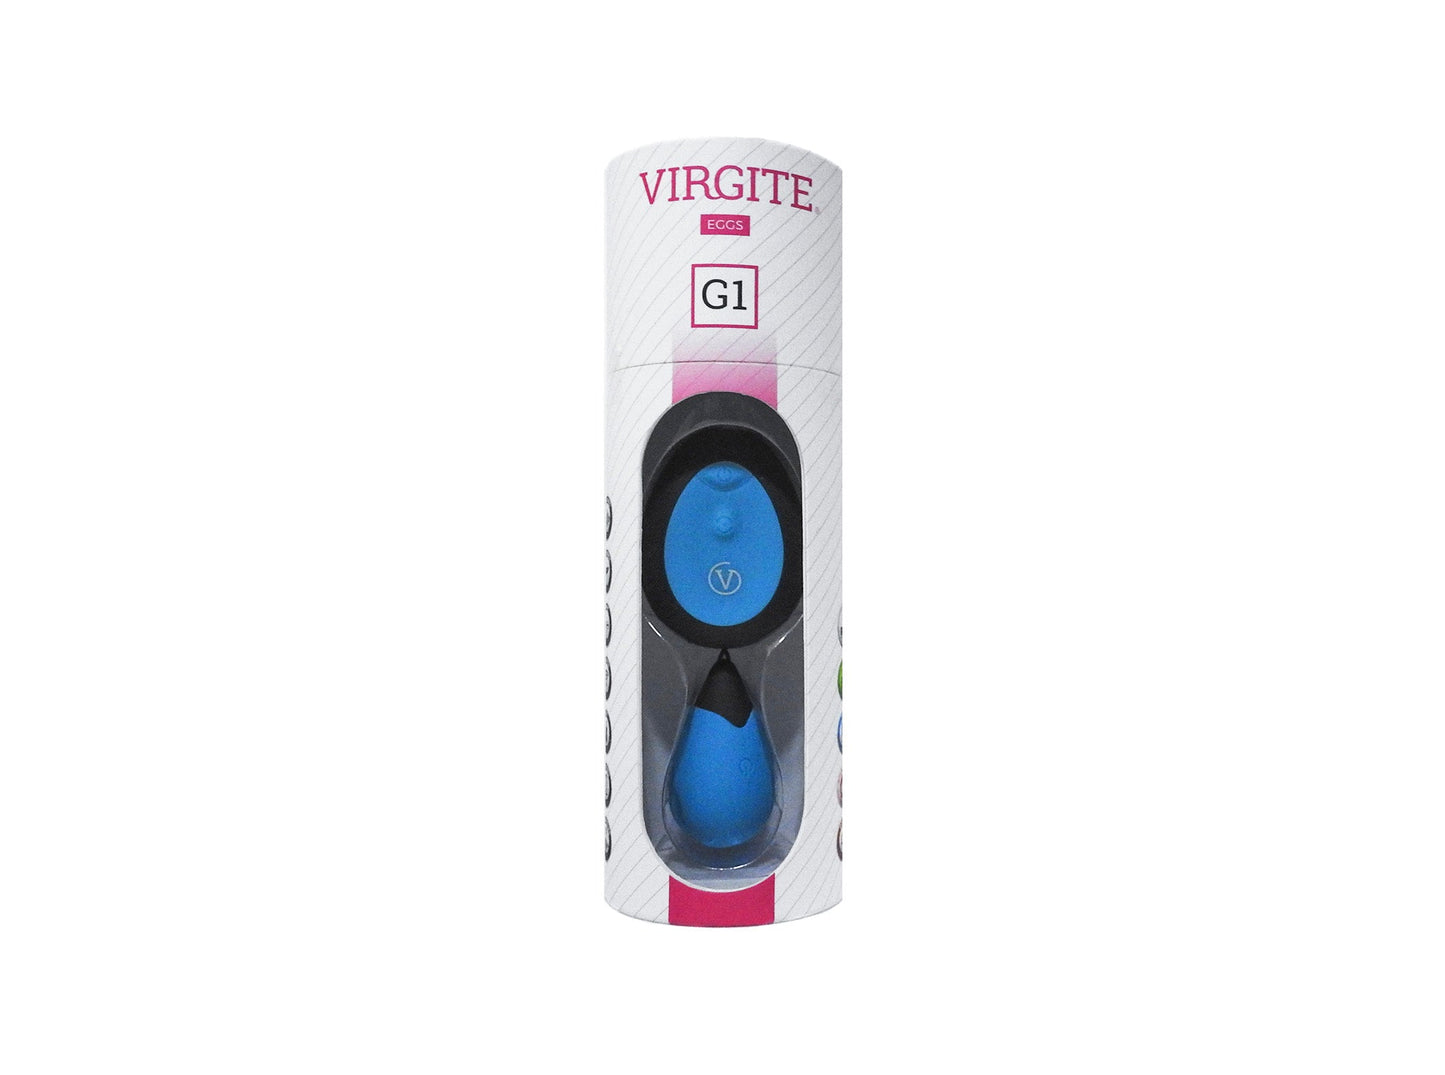 Virgite - Vibrerend Eitje Met Draadloze Afstandsbediening G1 - Blauw